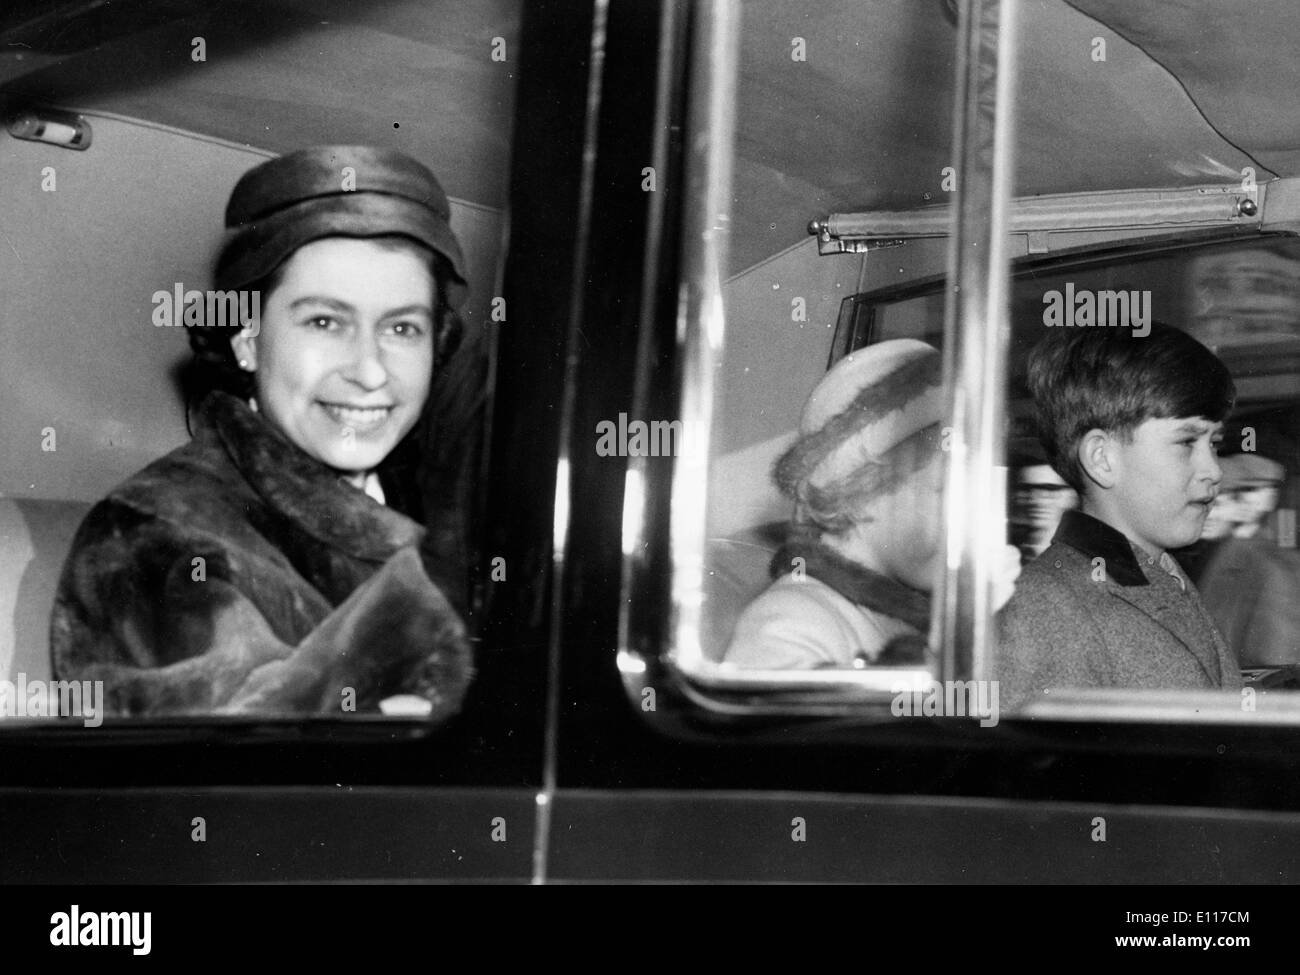 La reine Elizabeth II équitation dans voiture avec les enfants Banque D'Images